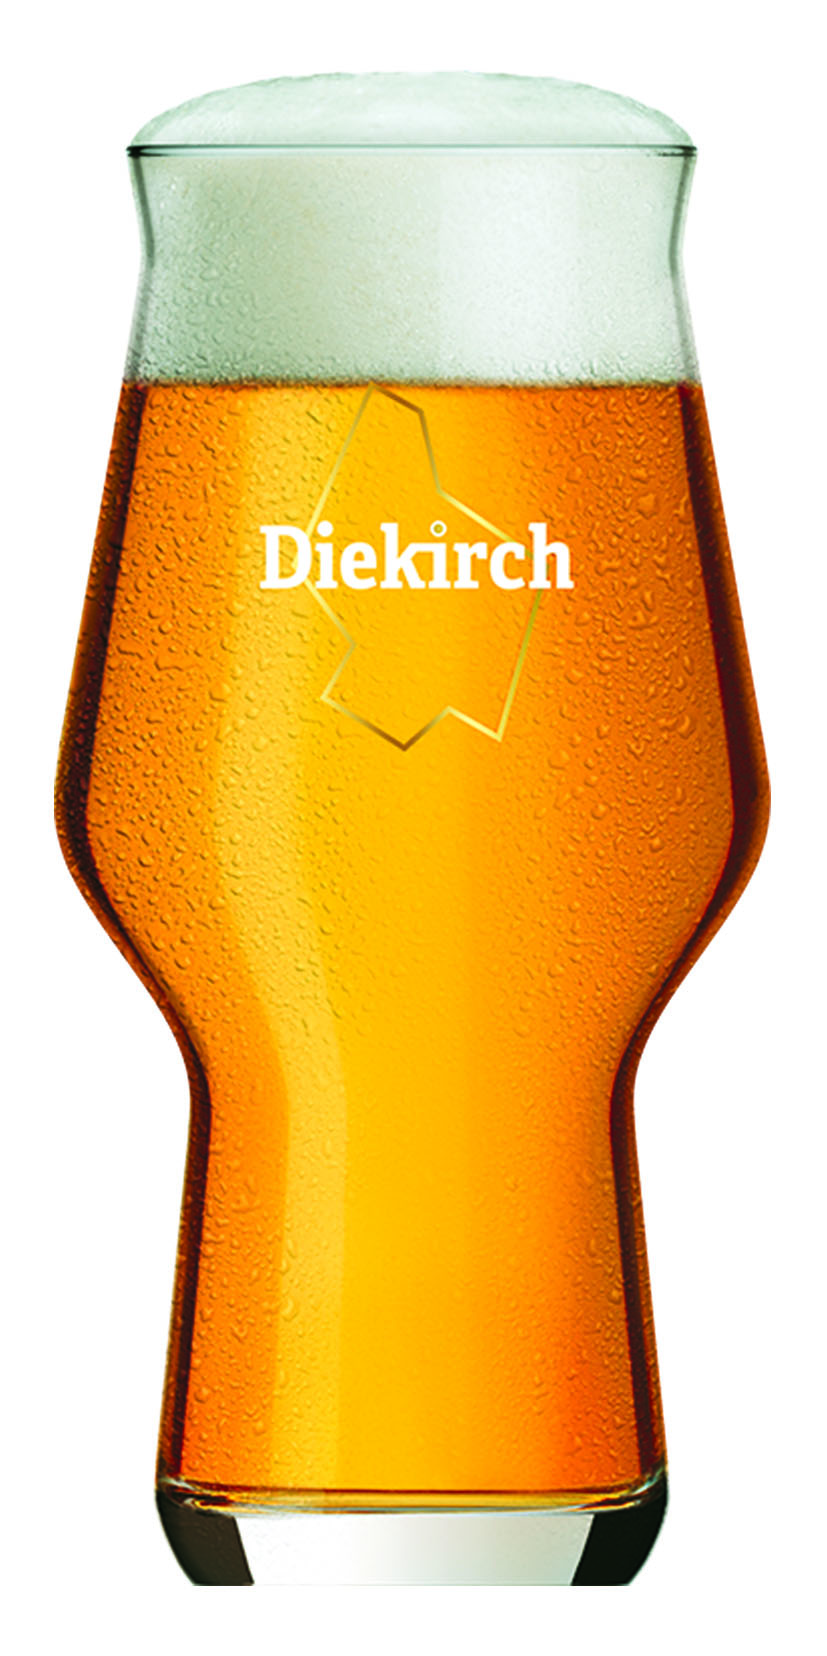 Diekirch Unfiltered_Glass_140319 Kopie.jpg